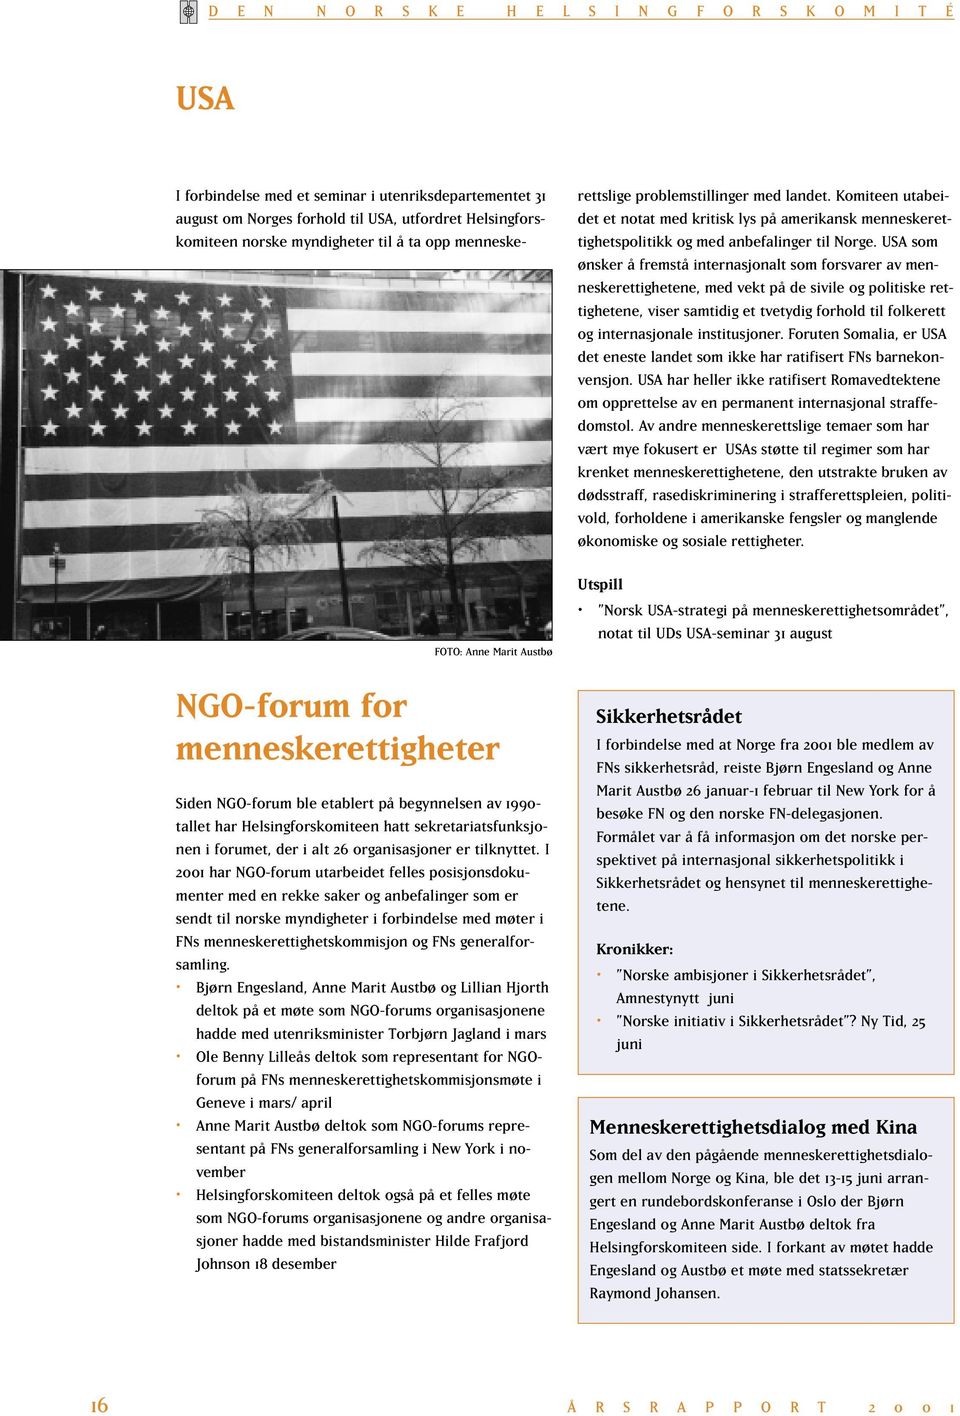 I 2001 har NGO-forum utarbeidet felles posisjonsdokumenter med en rekke saker og anbefalinger som er sendt til norske myndigheter i forbindelse med møter i FNs menneskerettighetskommisjon og FNs